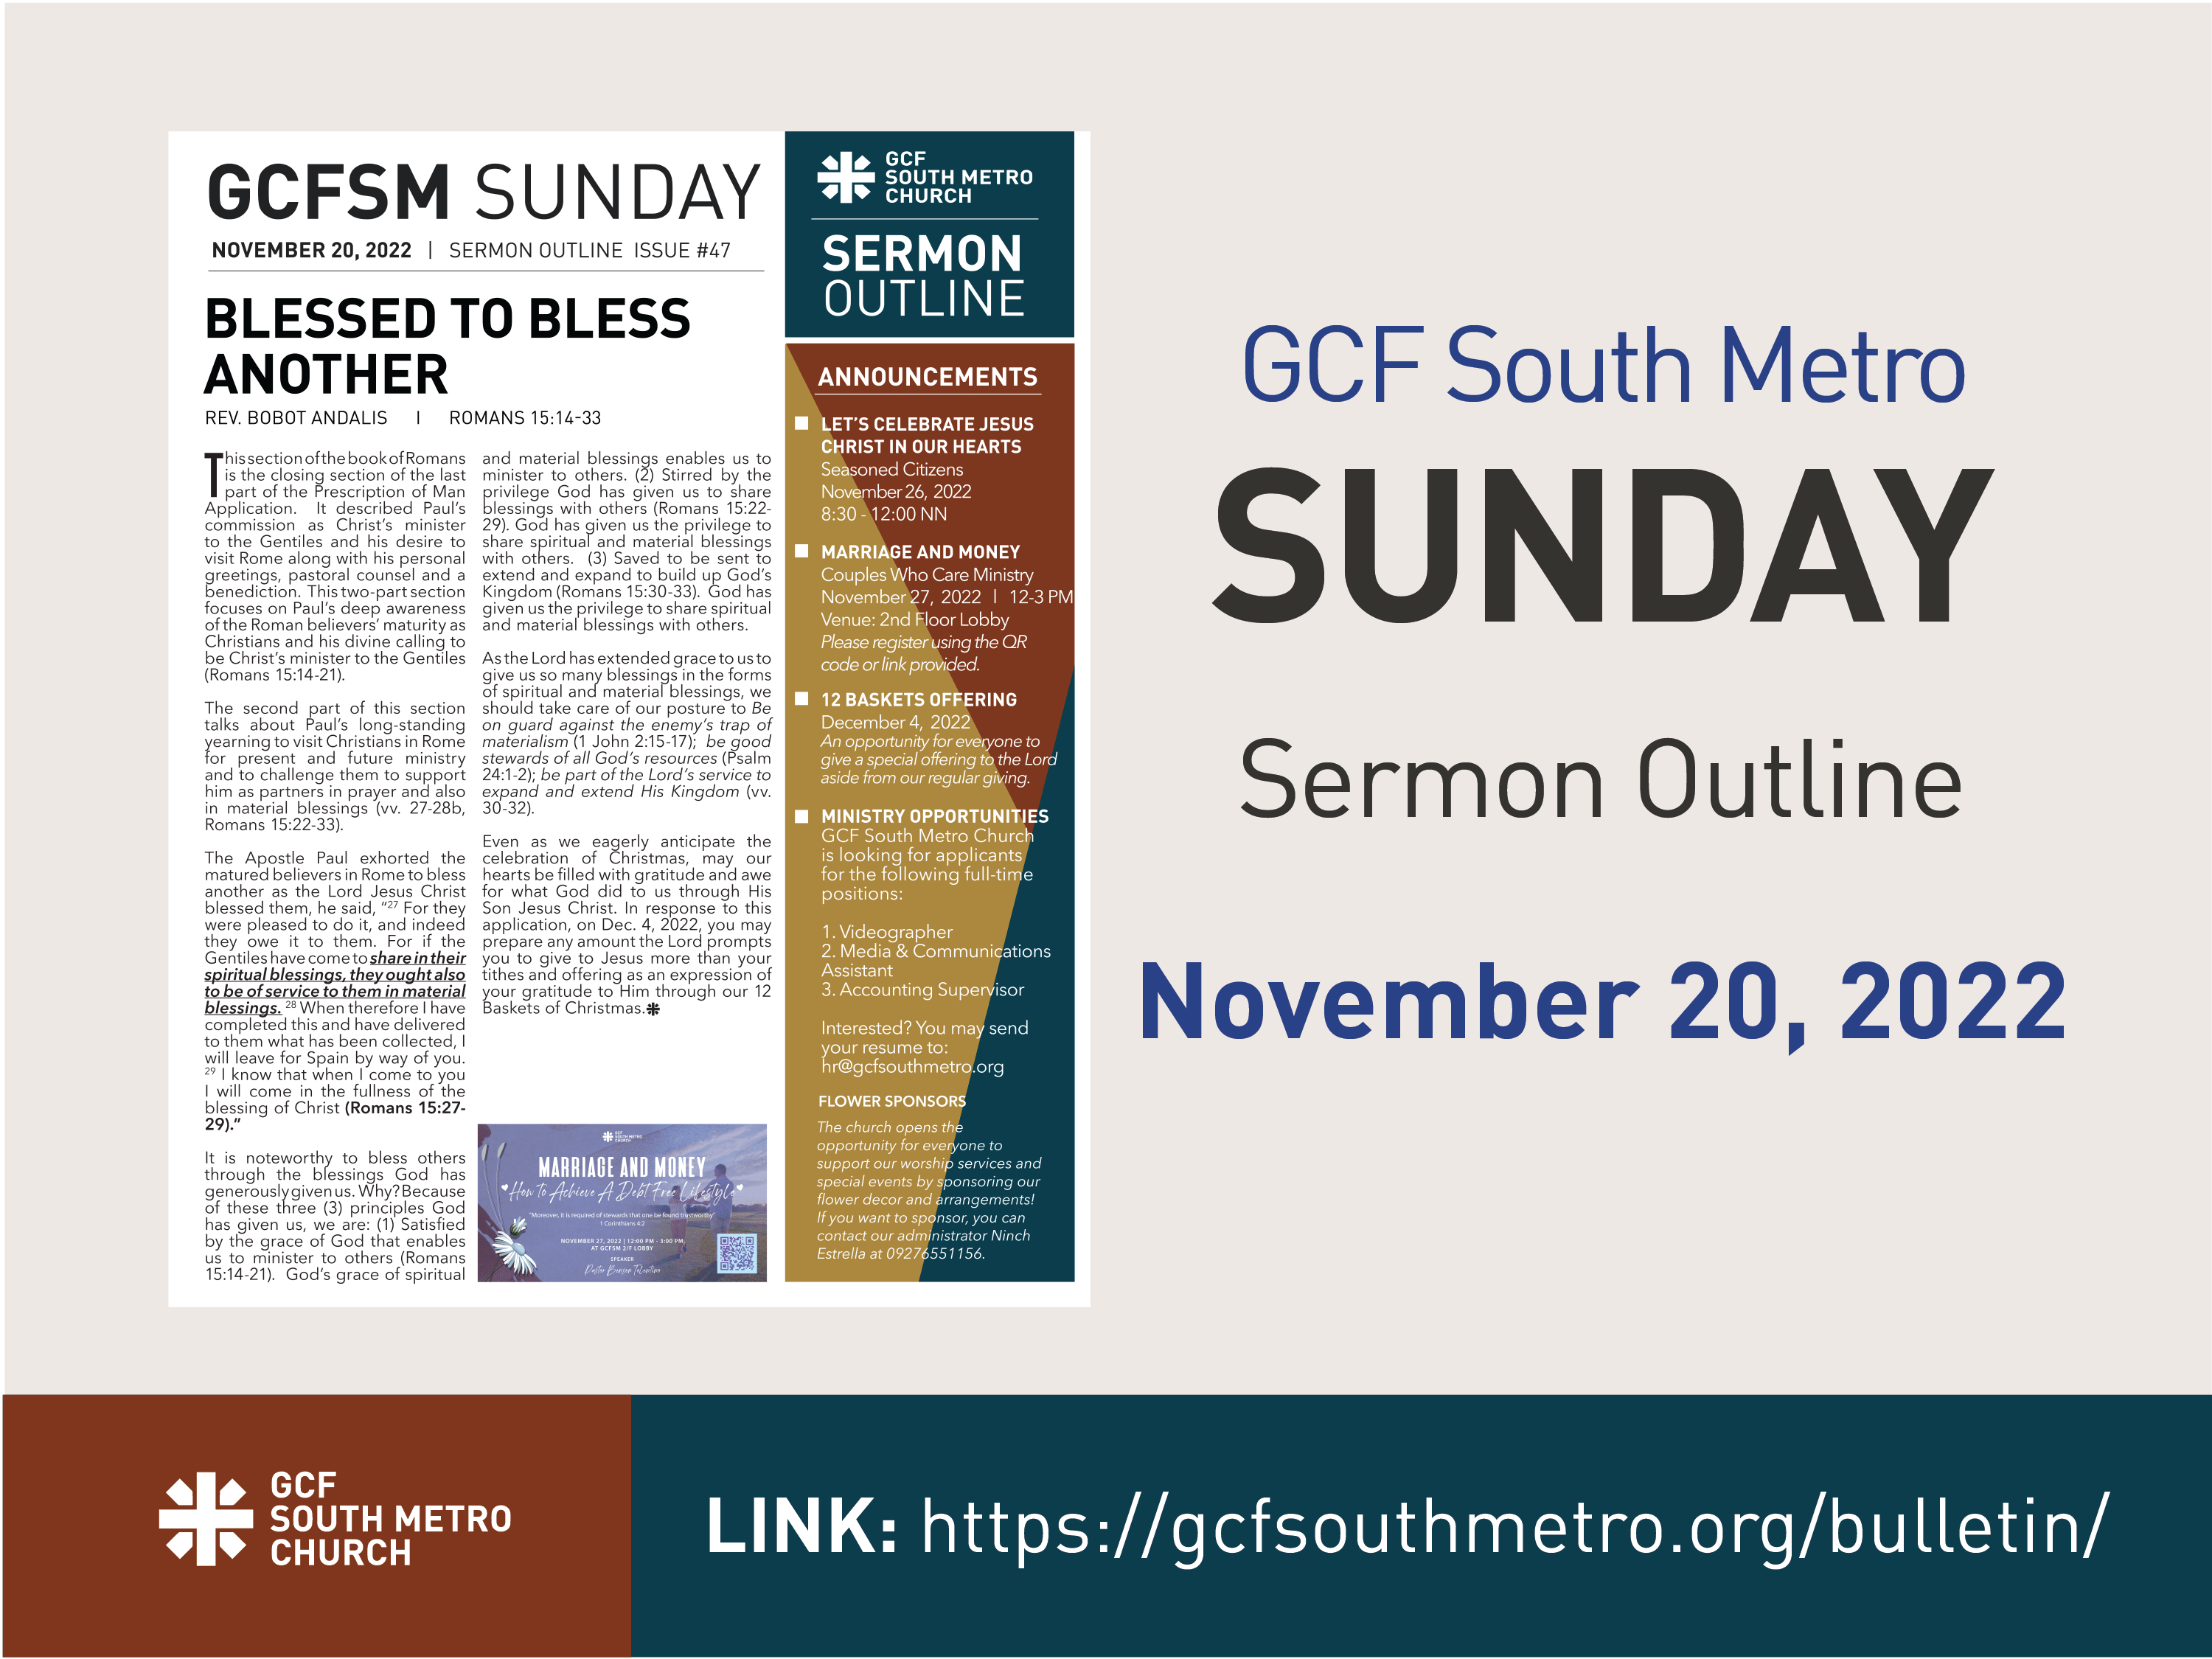 Sunday Bulletin – Sermon Outline, November 20, 2022